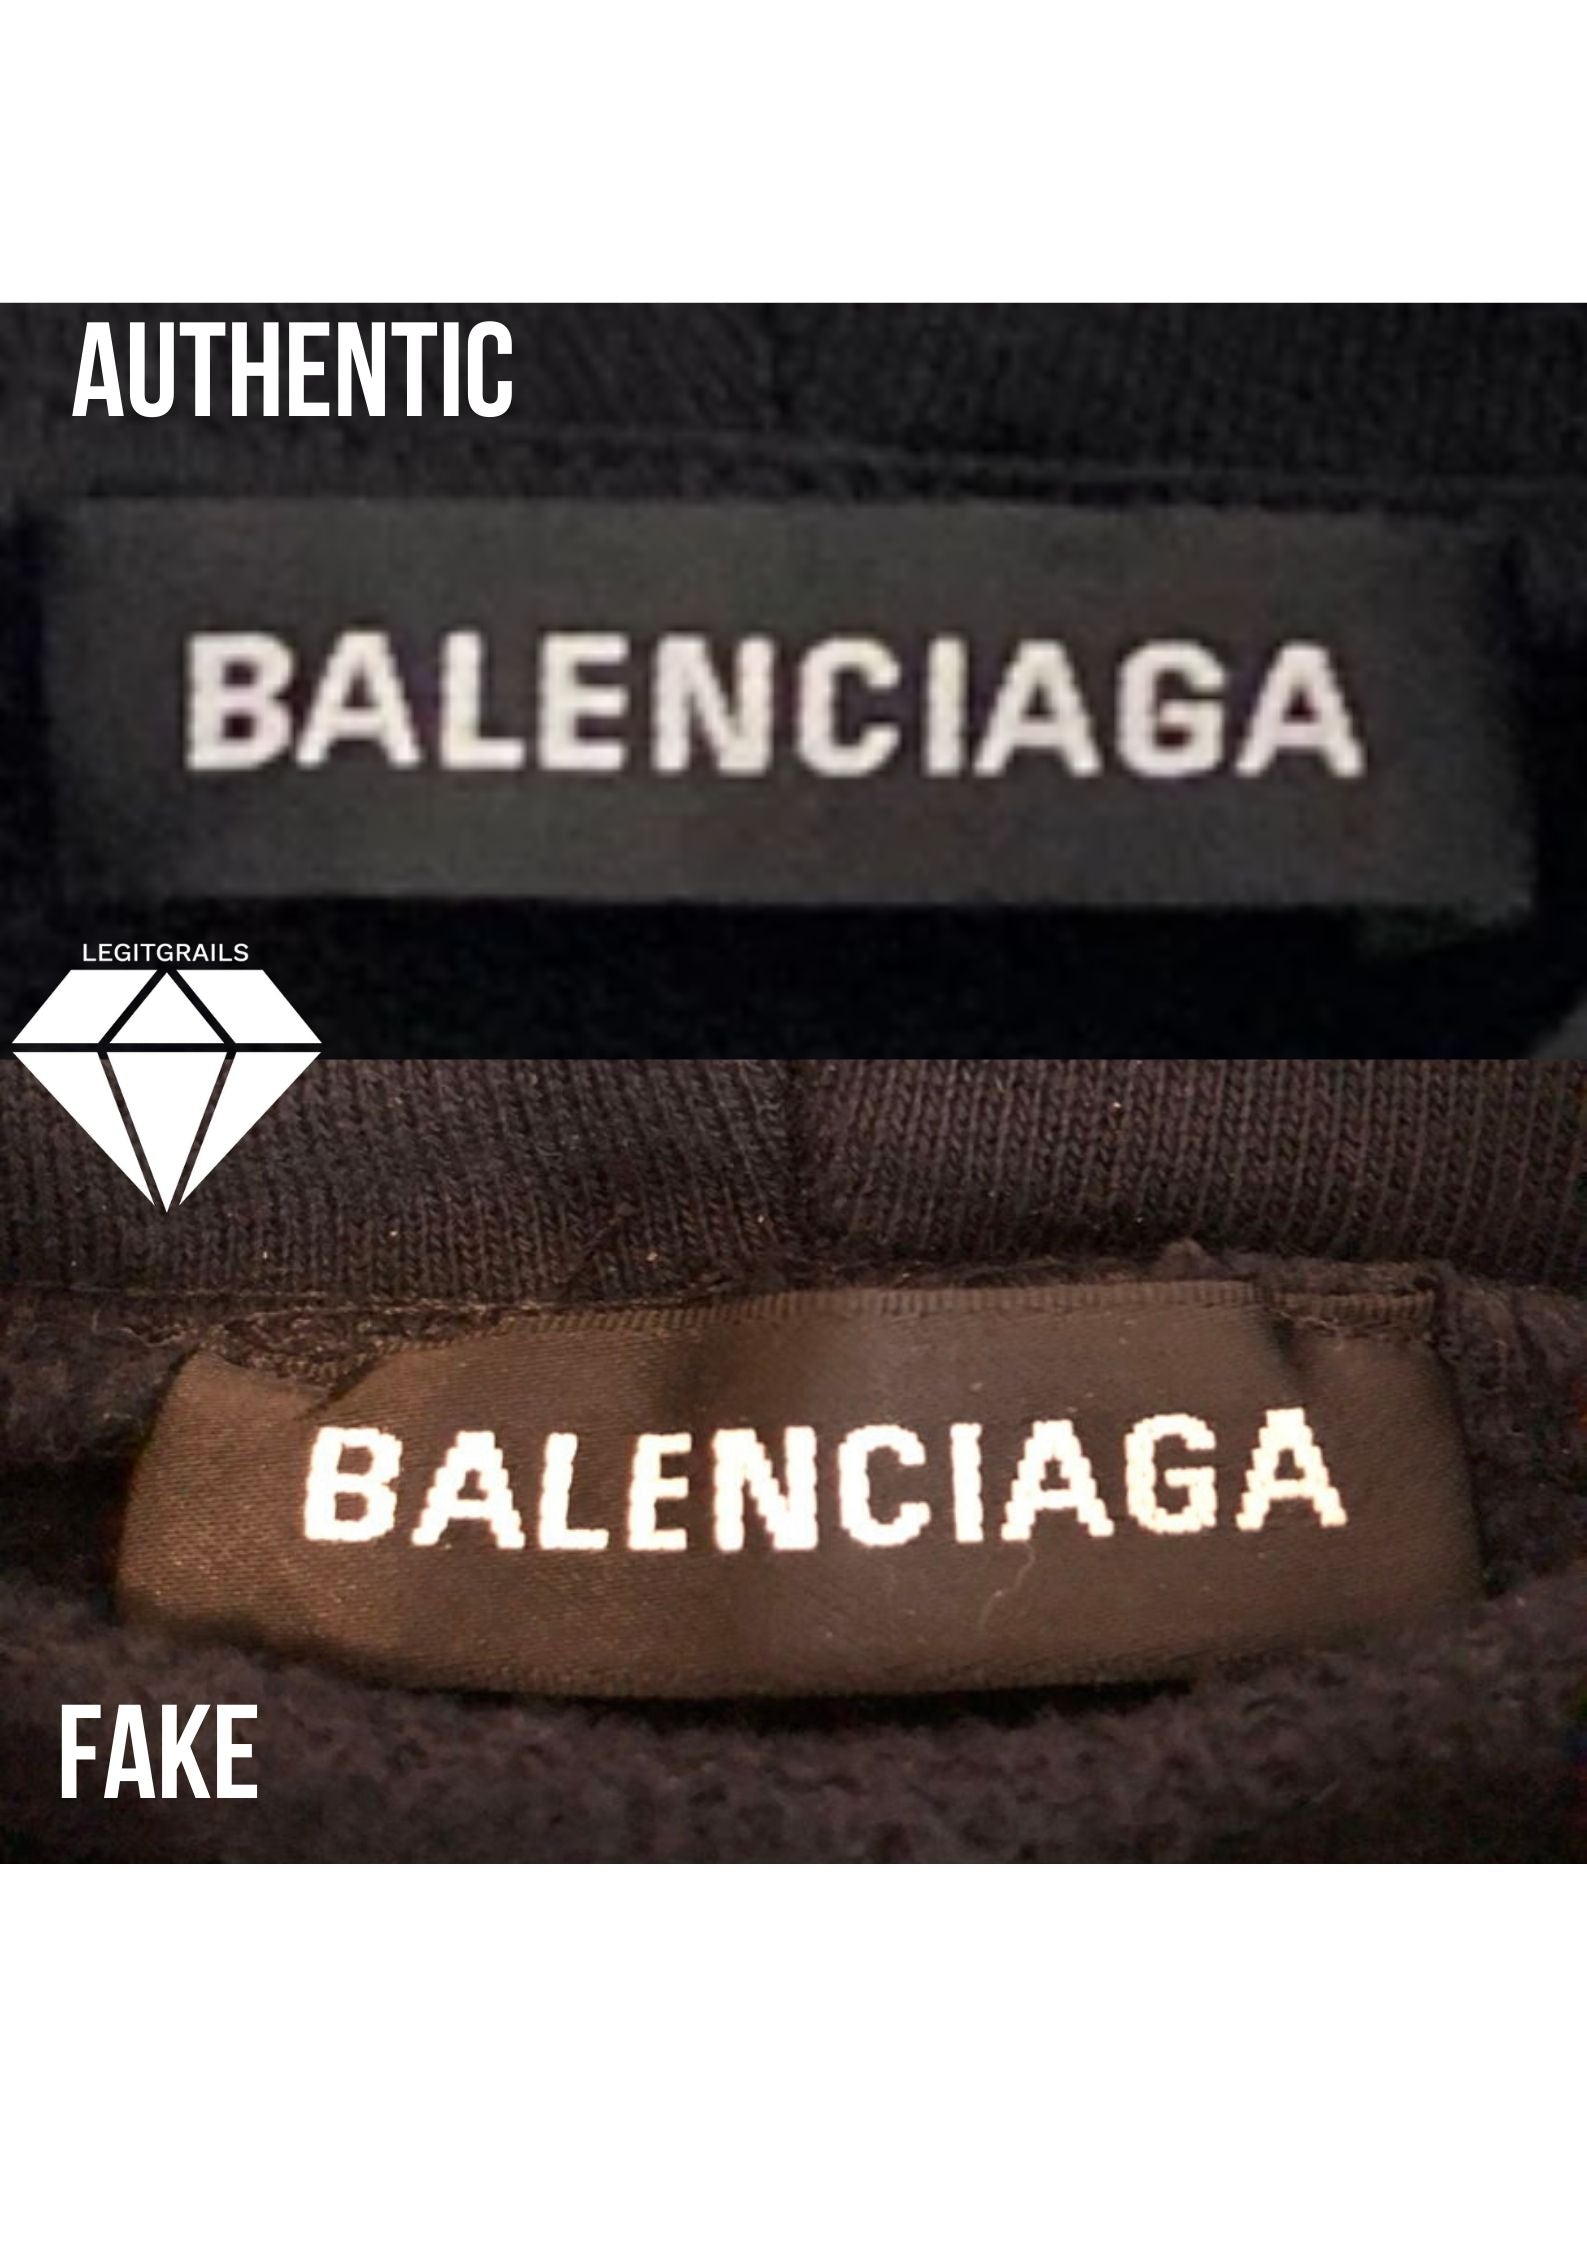 Balenciaga Neck Tag Fake vs Real | Balenciaga Legit Check